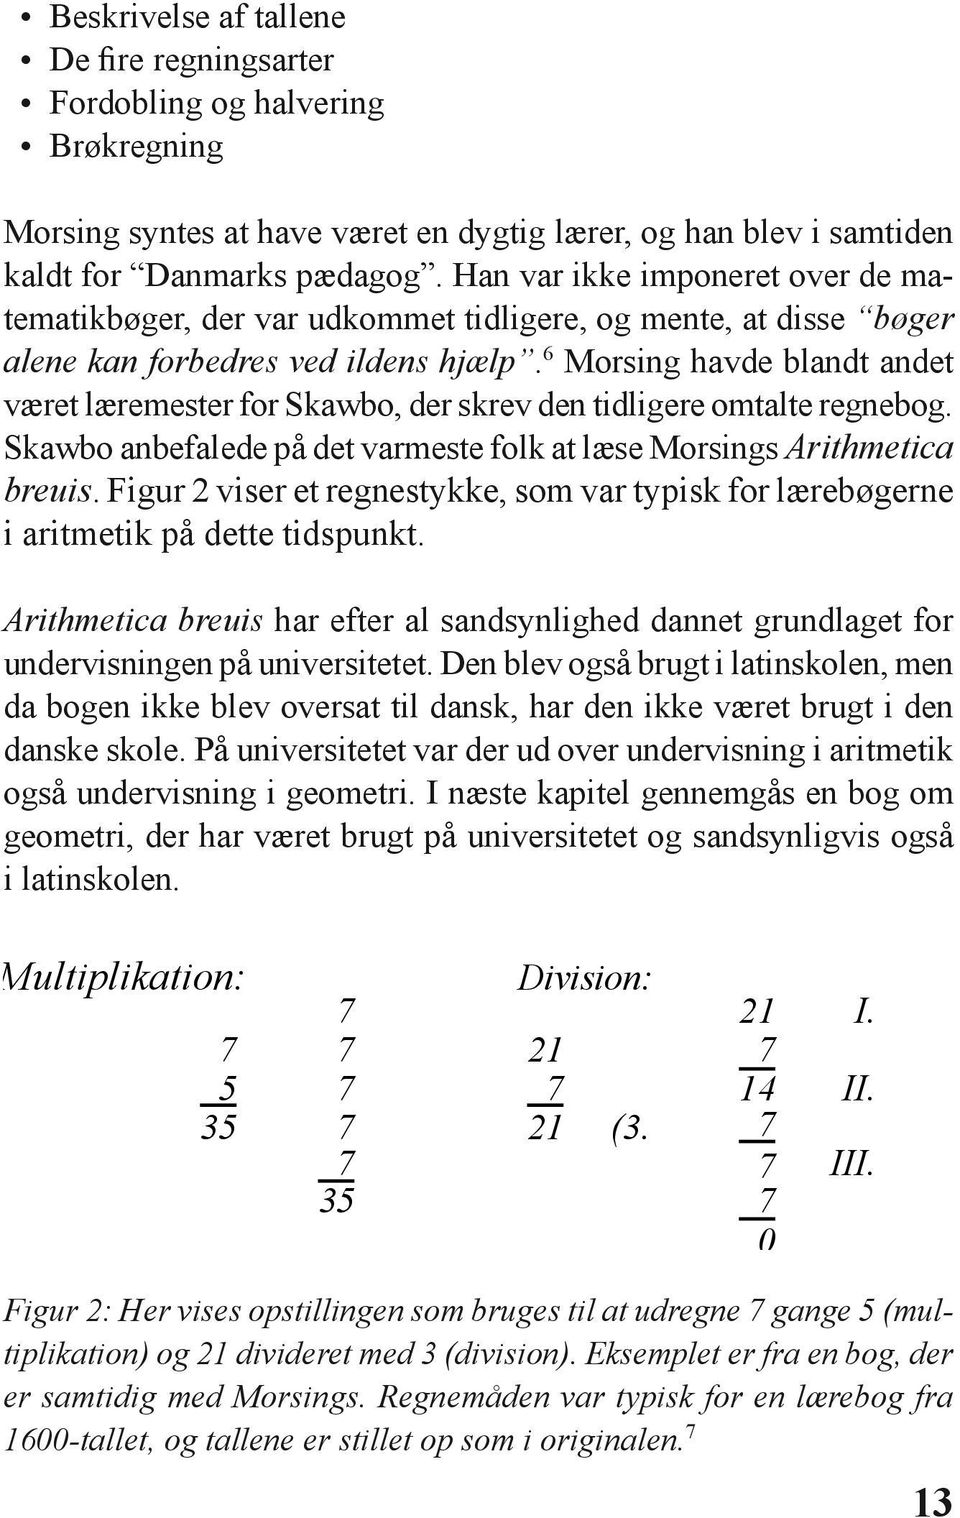 6 Morsing havde blandt andet været læremester for Skawbo, der skrev den tidligere omtalte regnebog. Skawbo anbefalede på det varmeste folk at læse Morsings Arithmetica breuis.